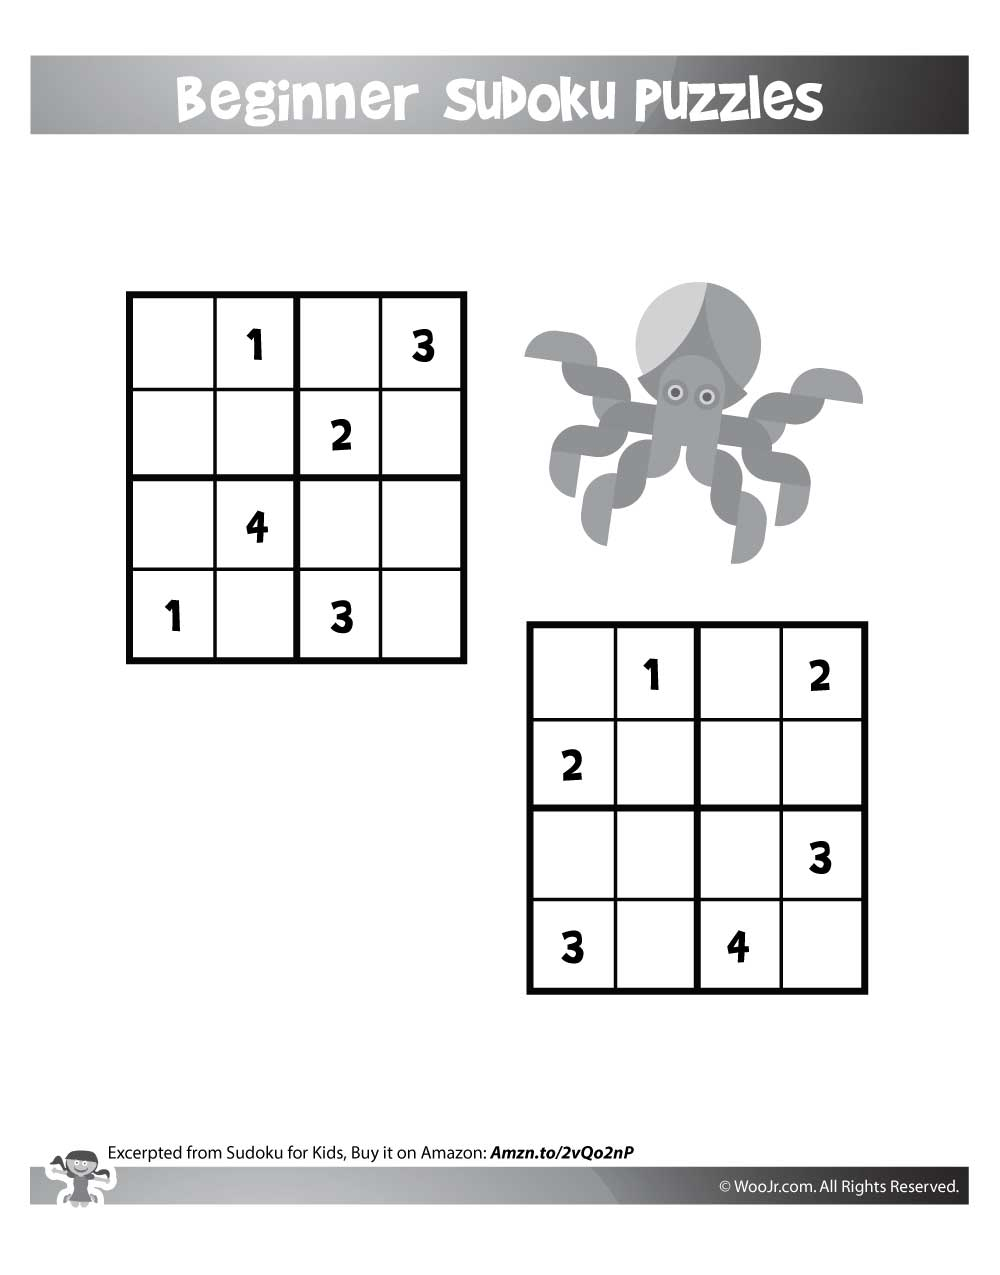 4x4 Sudoku Printable